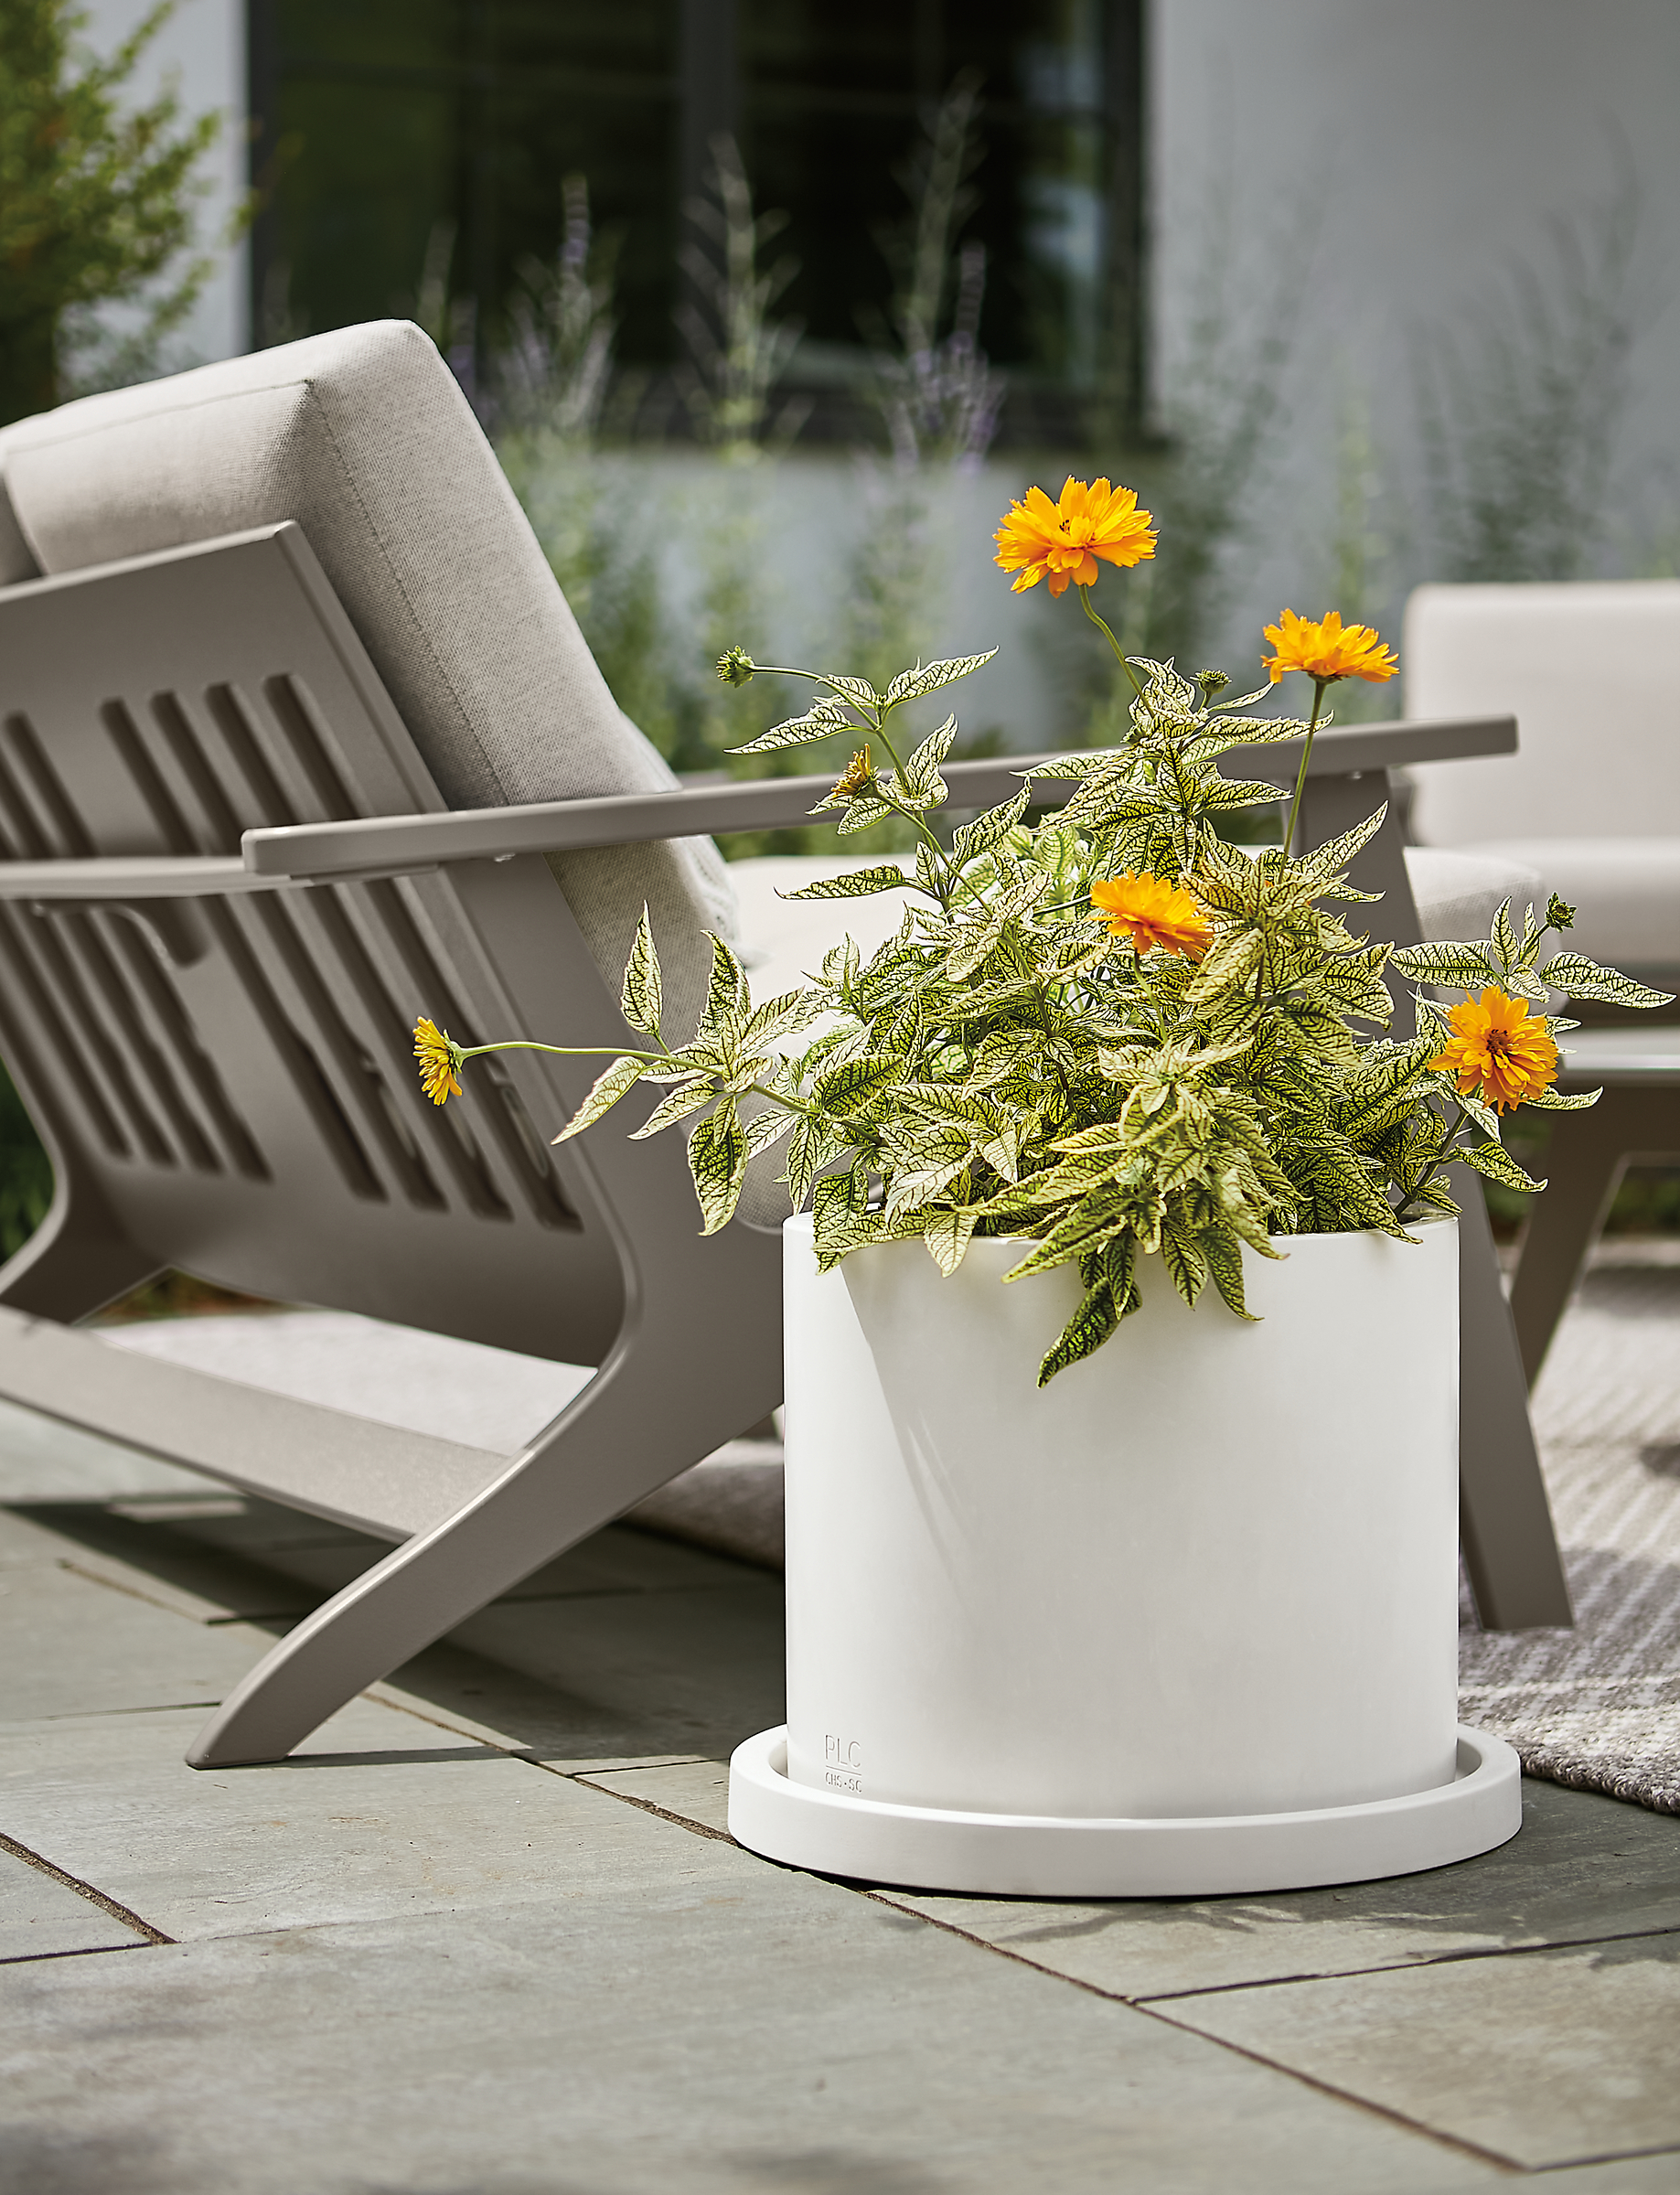 renga planter in white on stone patio outdoors.